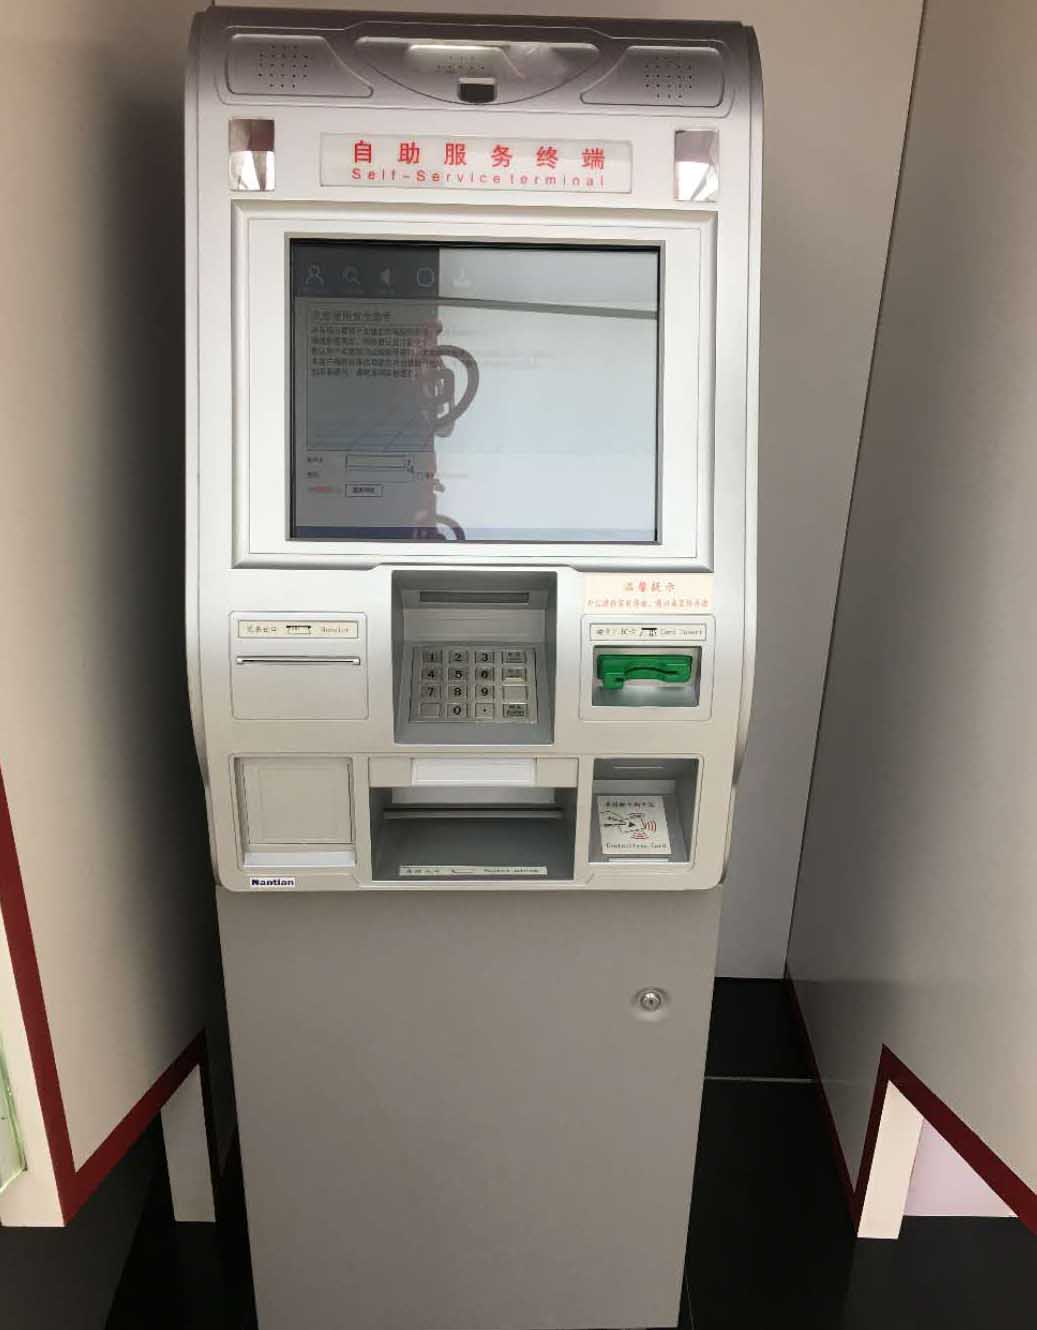 触摸屏玻雅博登录平台(中国)有限公司及条纹玻雅博登录平台(中国)有限公司在银行ATM机上的应用